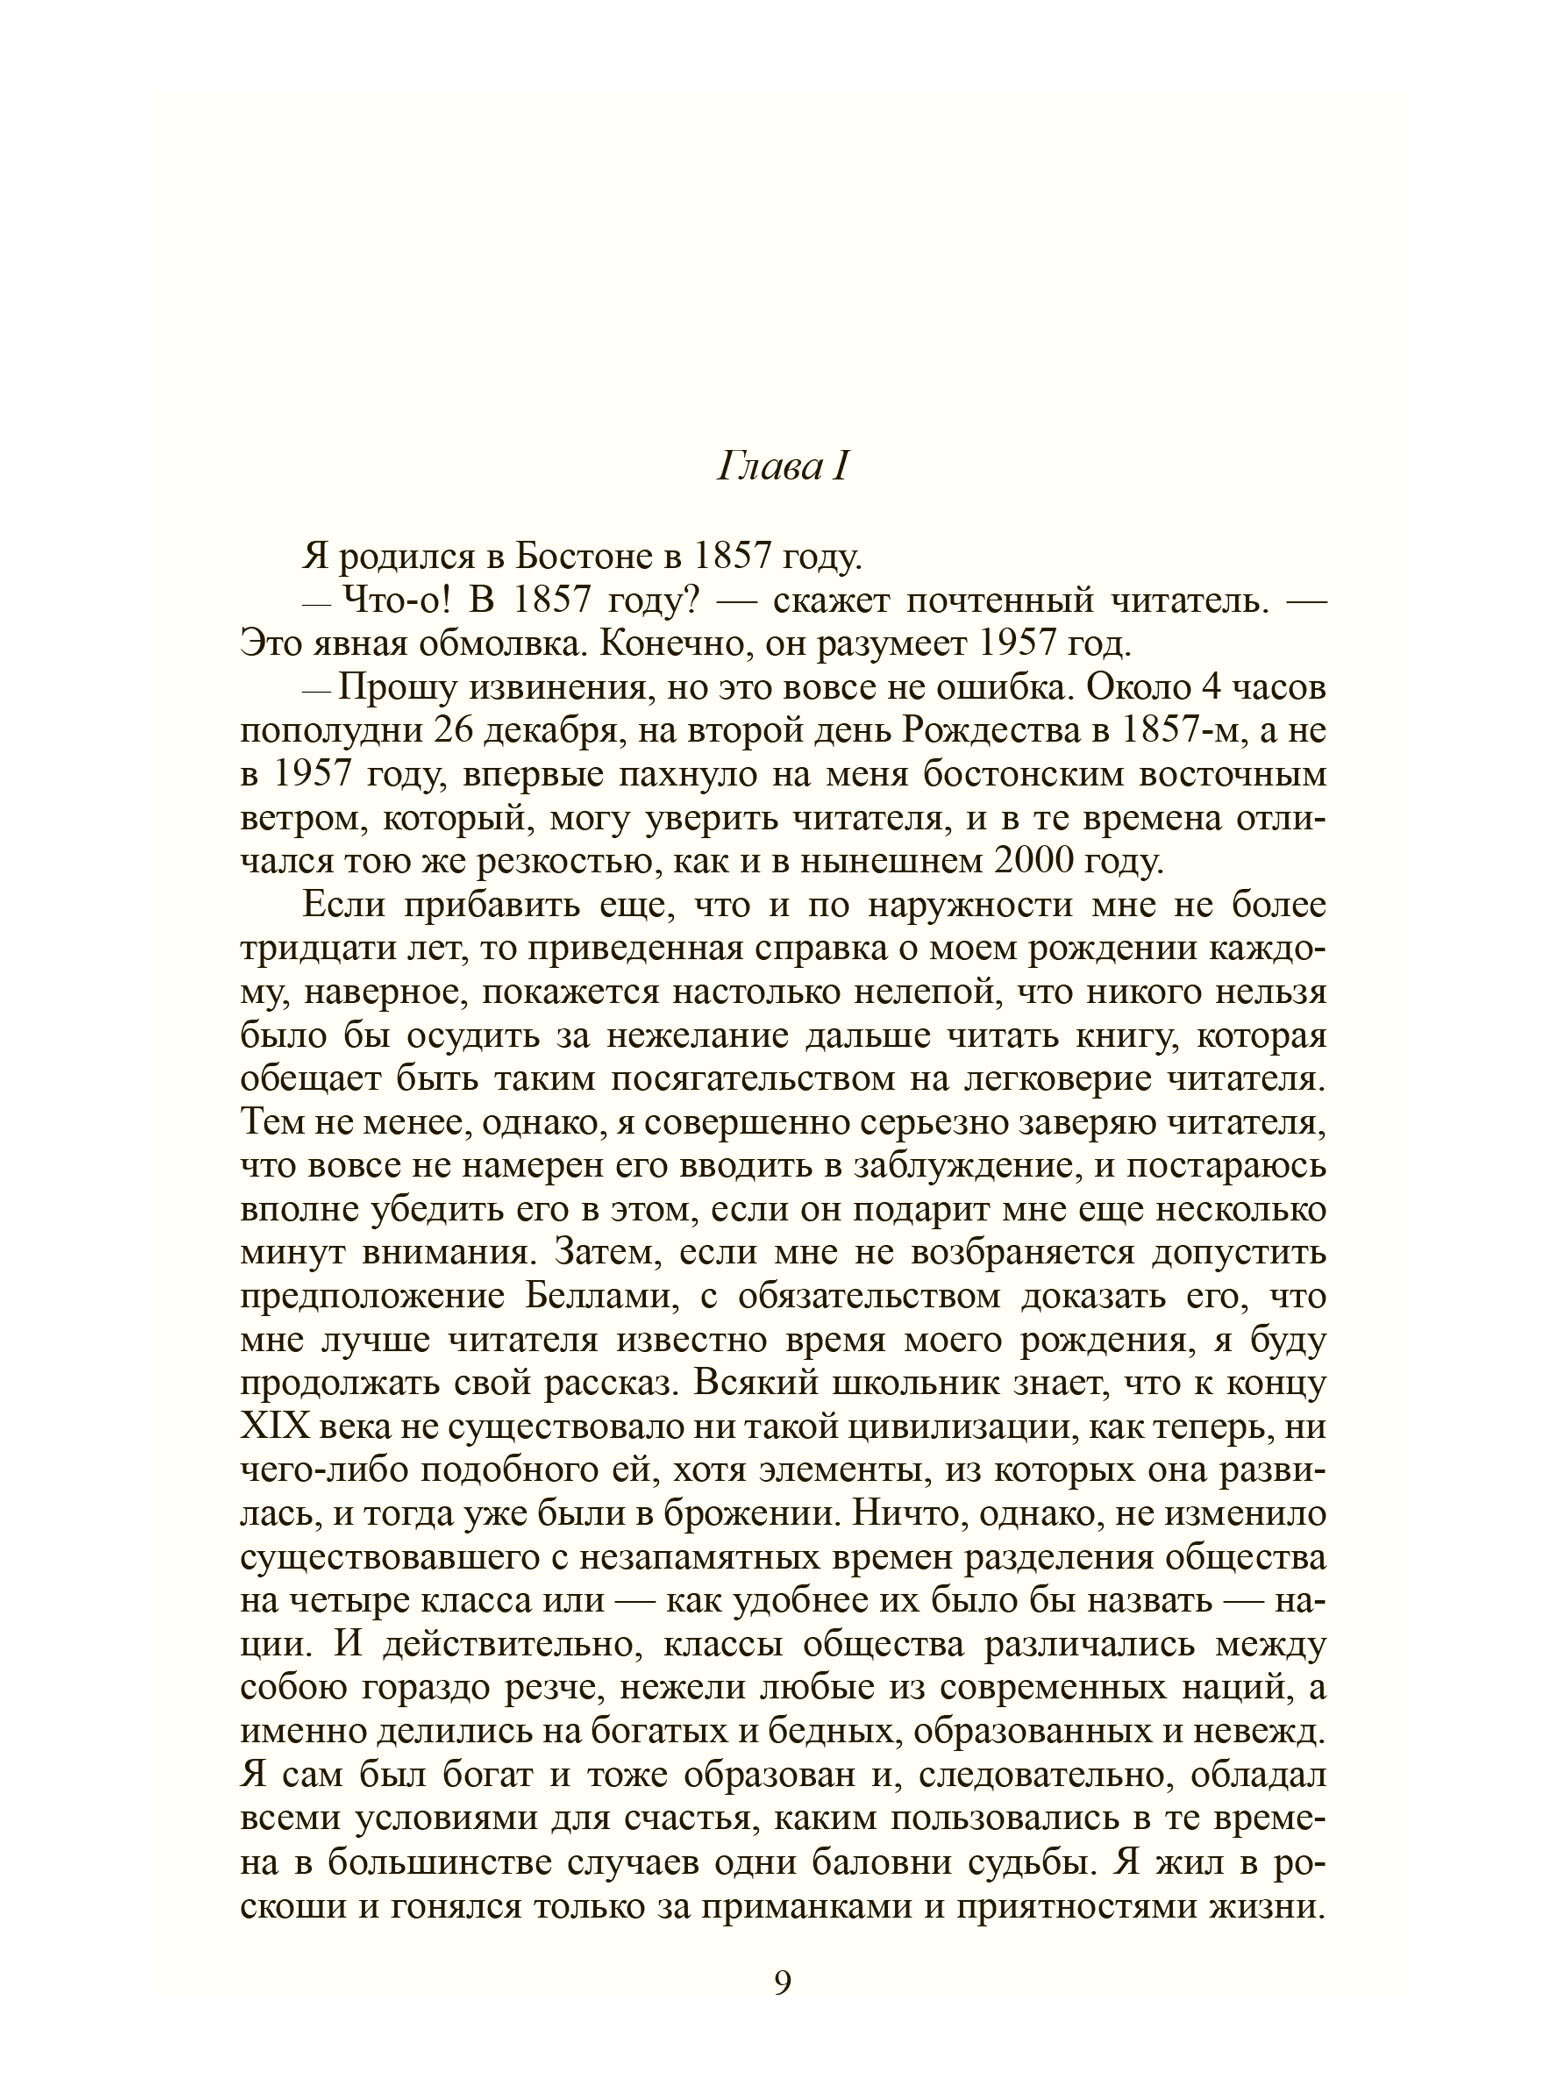 Собрание сочинений в 2-х томах - фото №8